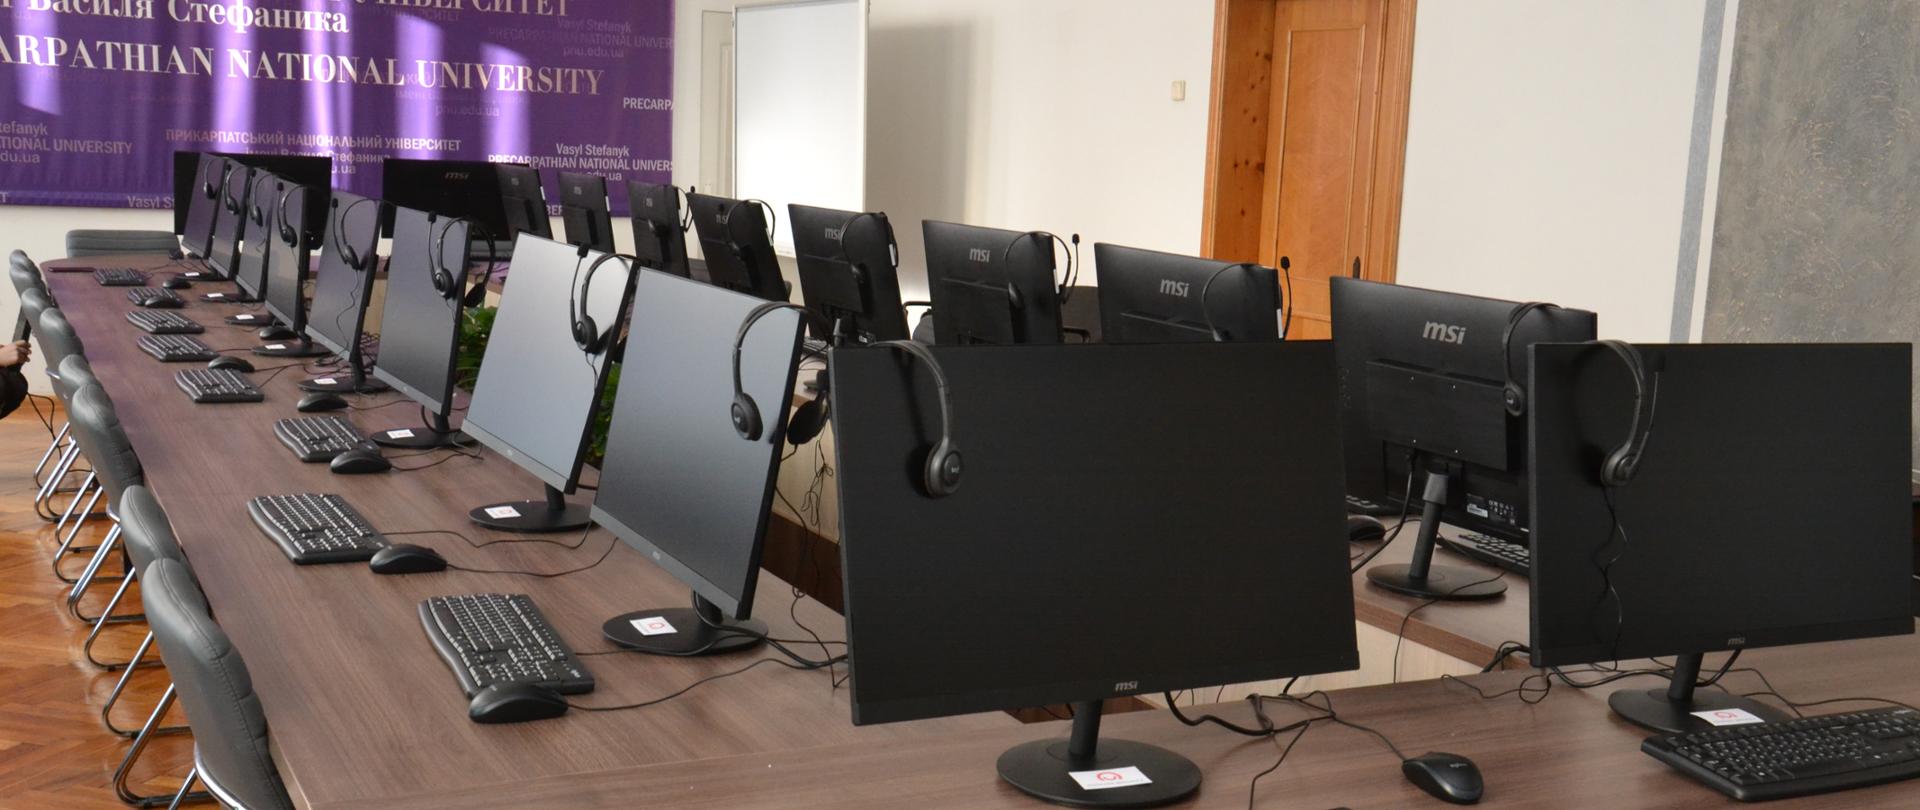 Sala komputerowa z licznymi stanowiskami komputerowymi.